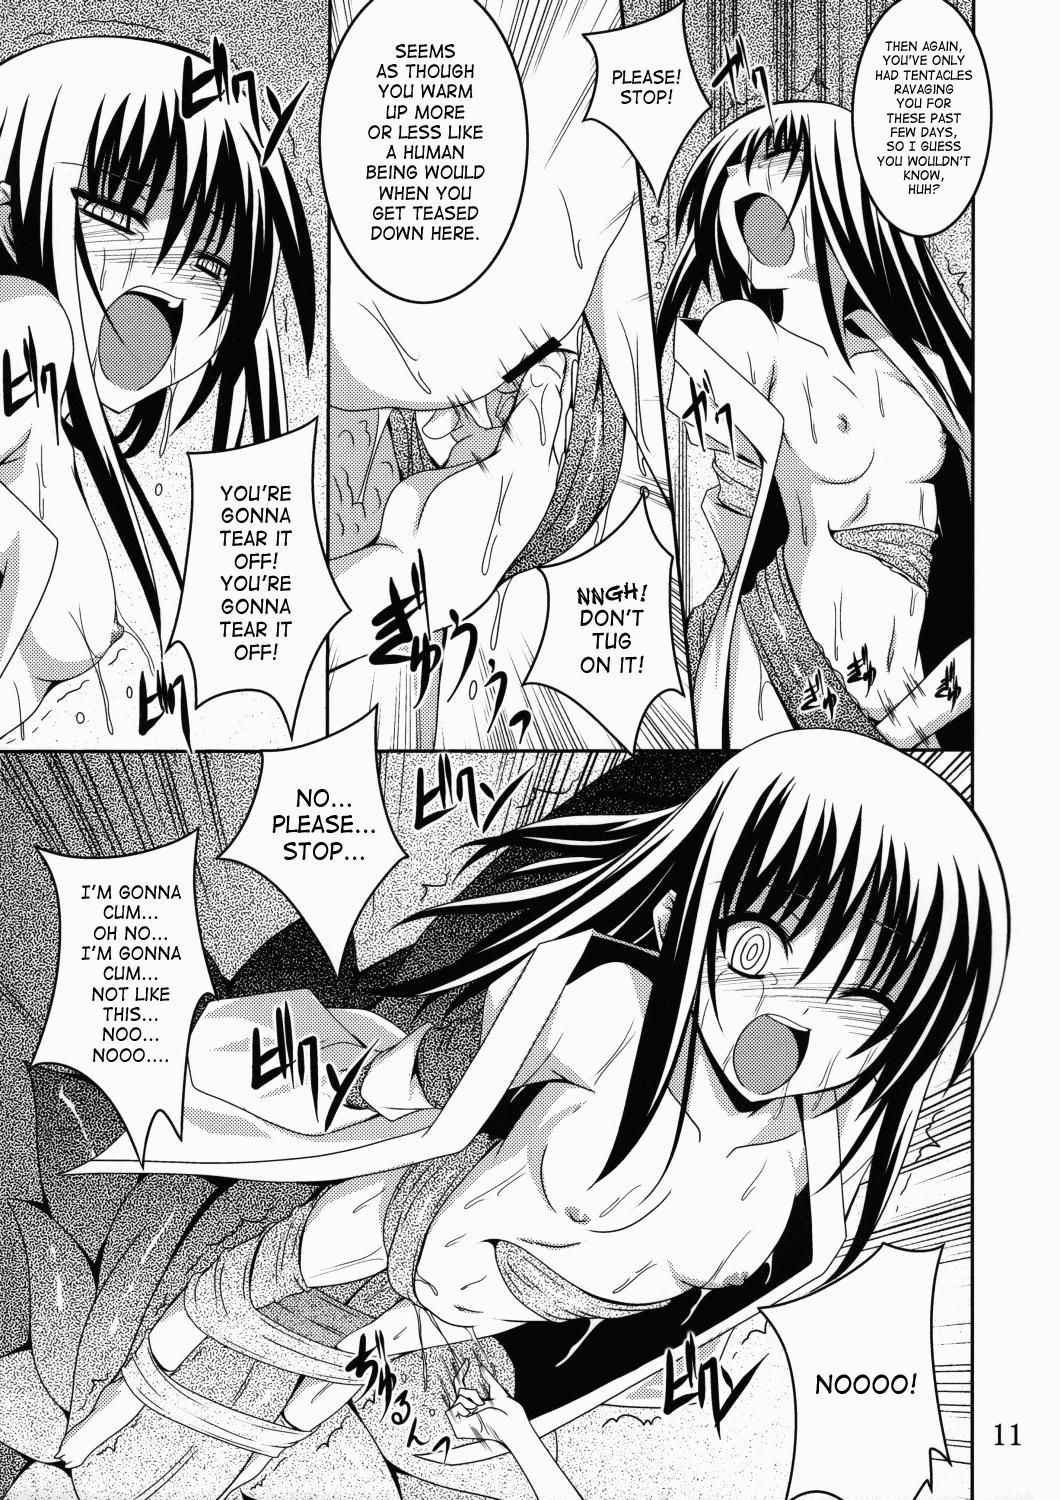 Hardcore Rough Sex Ayakashi Kitsune 2 - Nurarihyon no mago Pick Up - Page 10